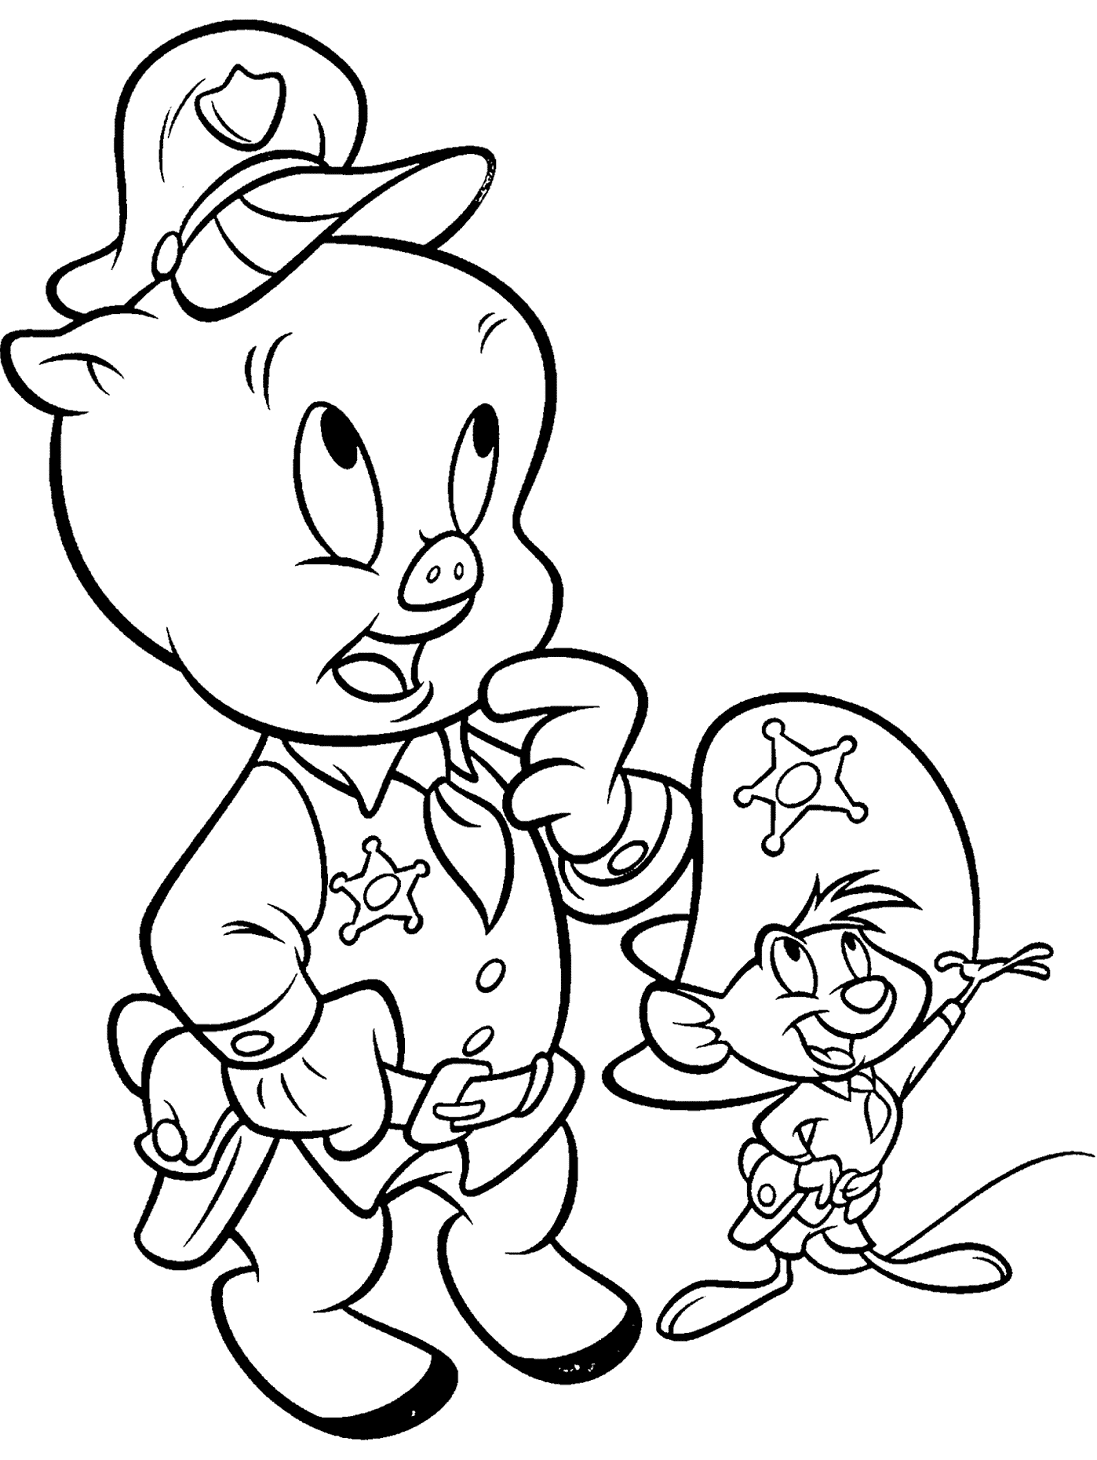 《乐一通》角色中的小猪猪和快速冈萨雷斯